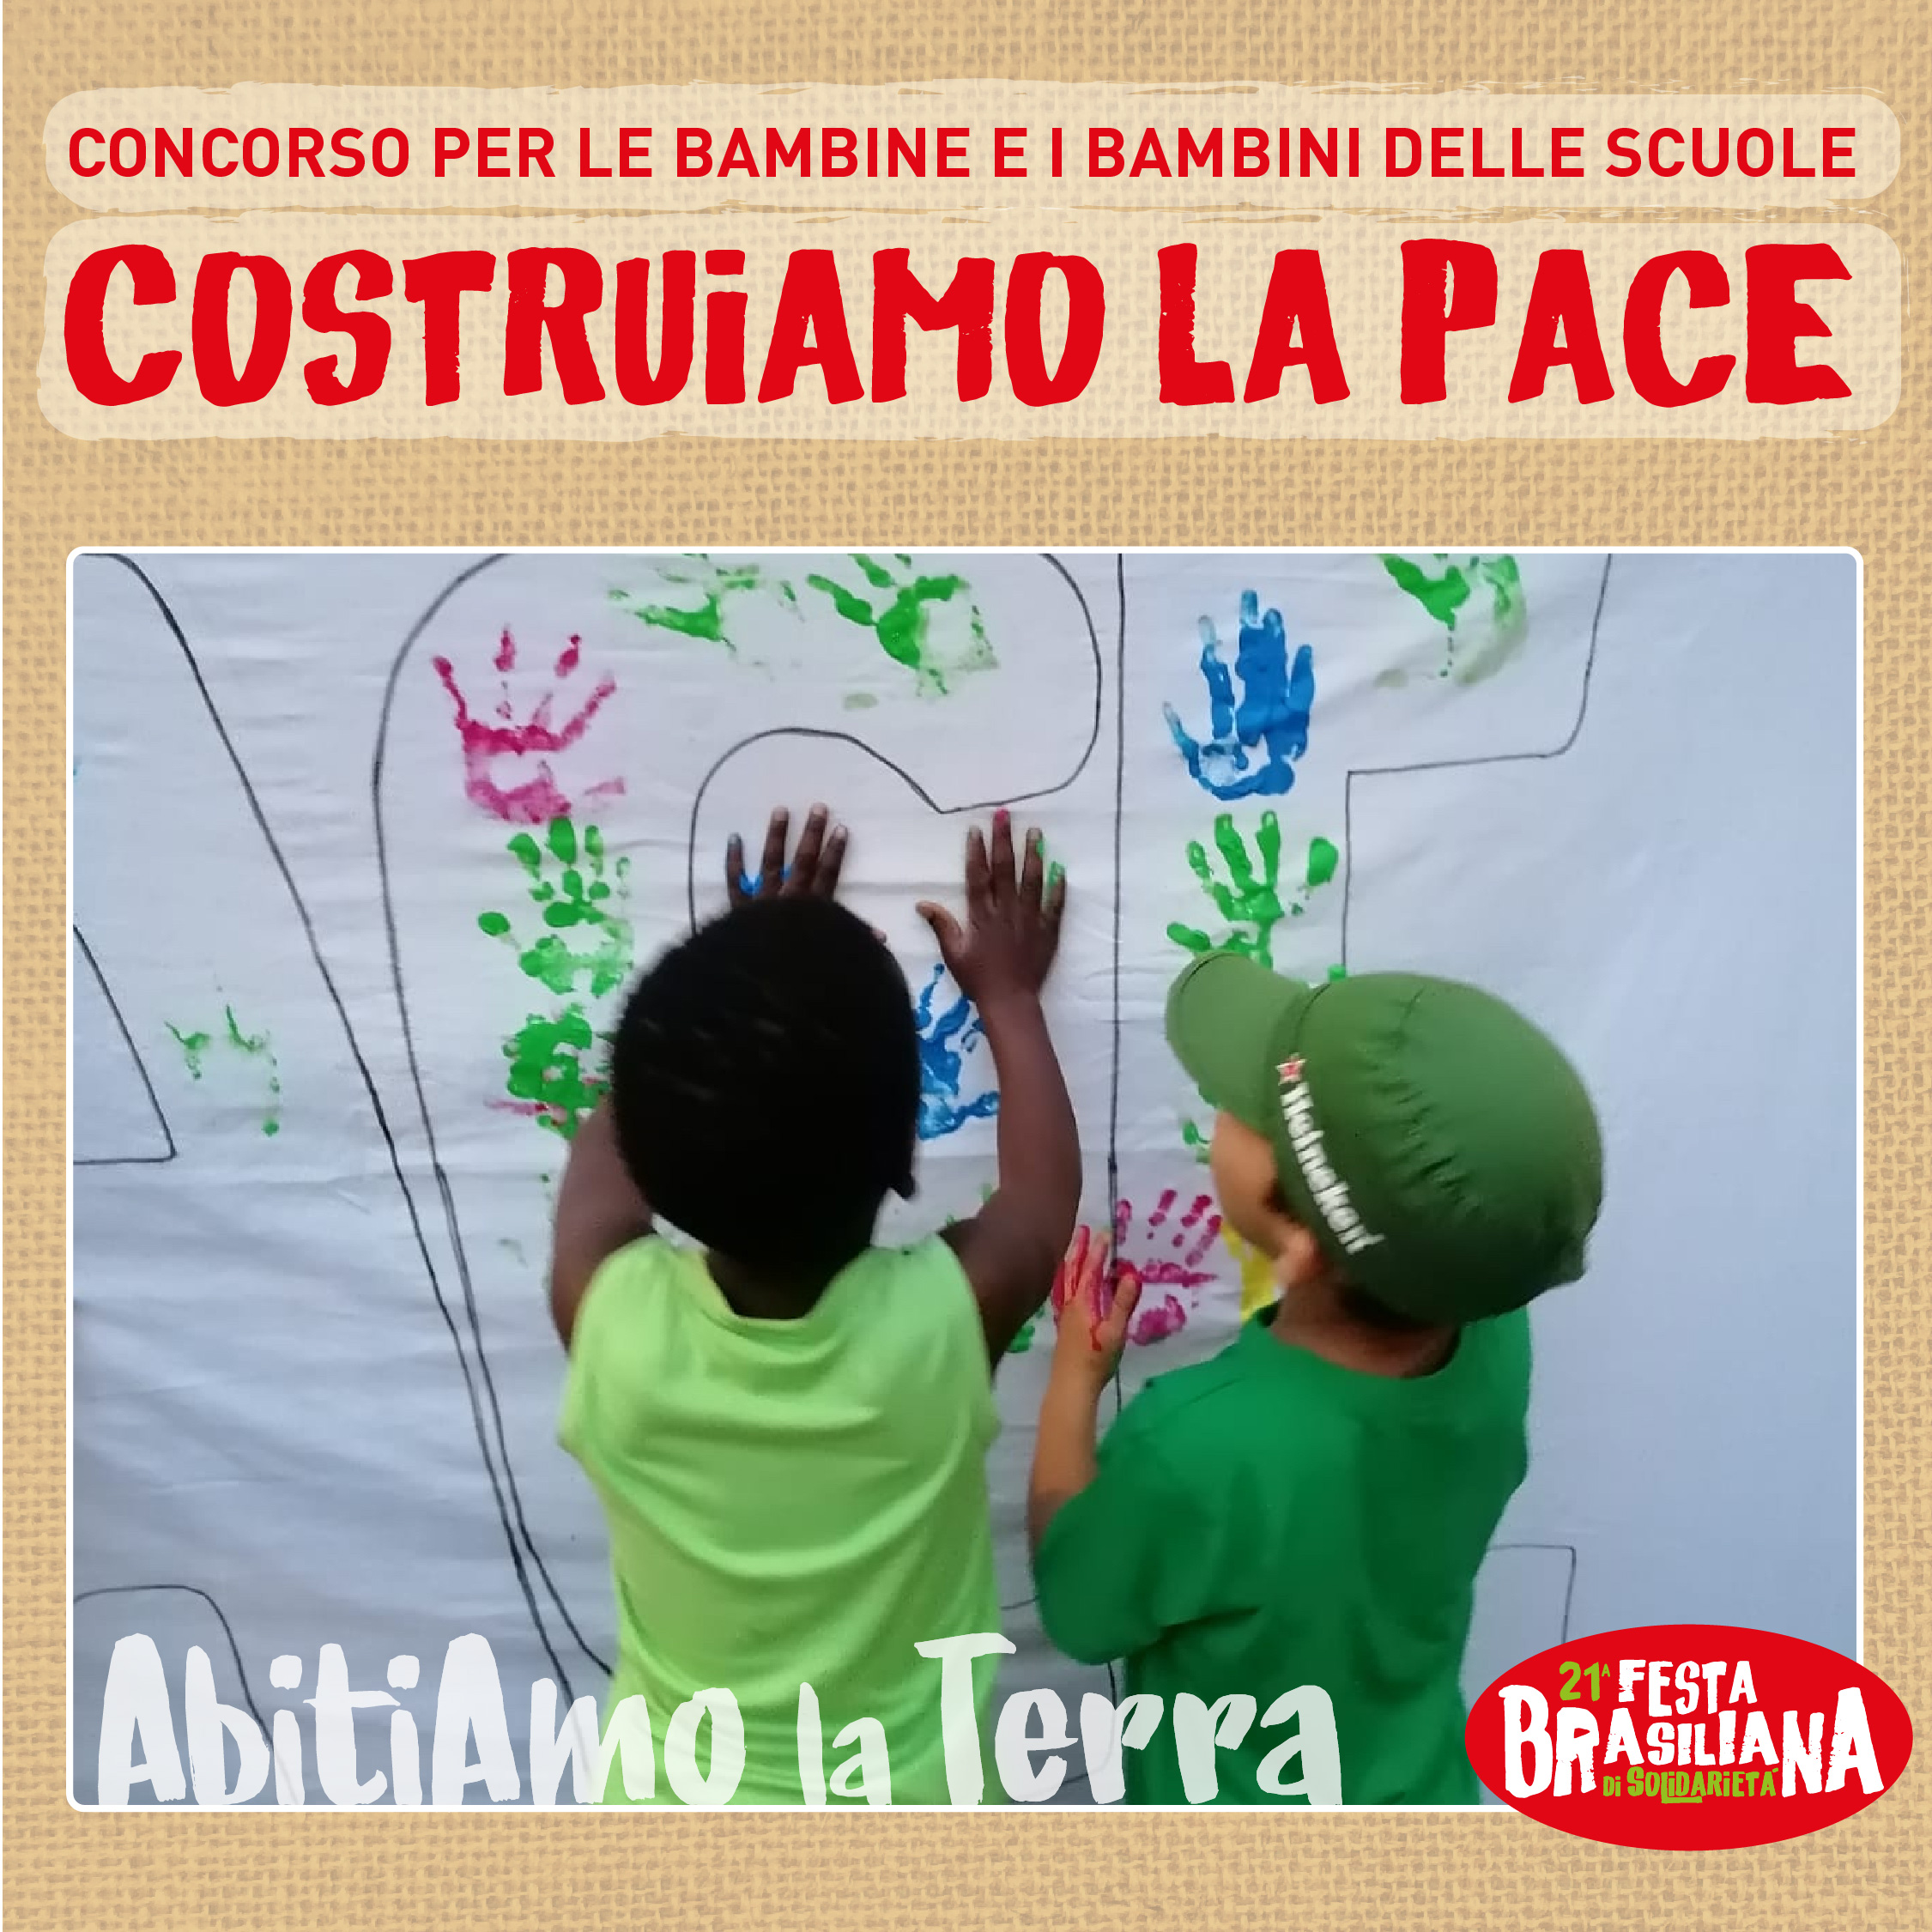 Concorso “Costruiamo la pace” per le scuole!